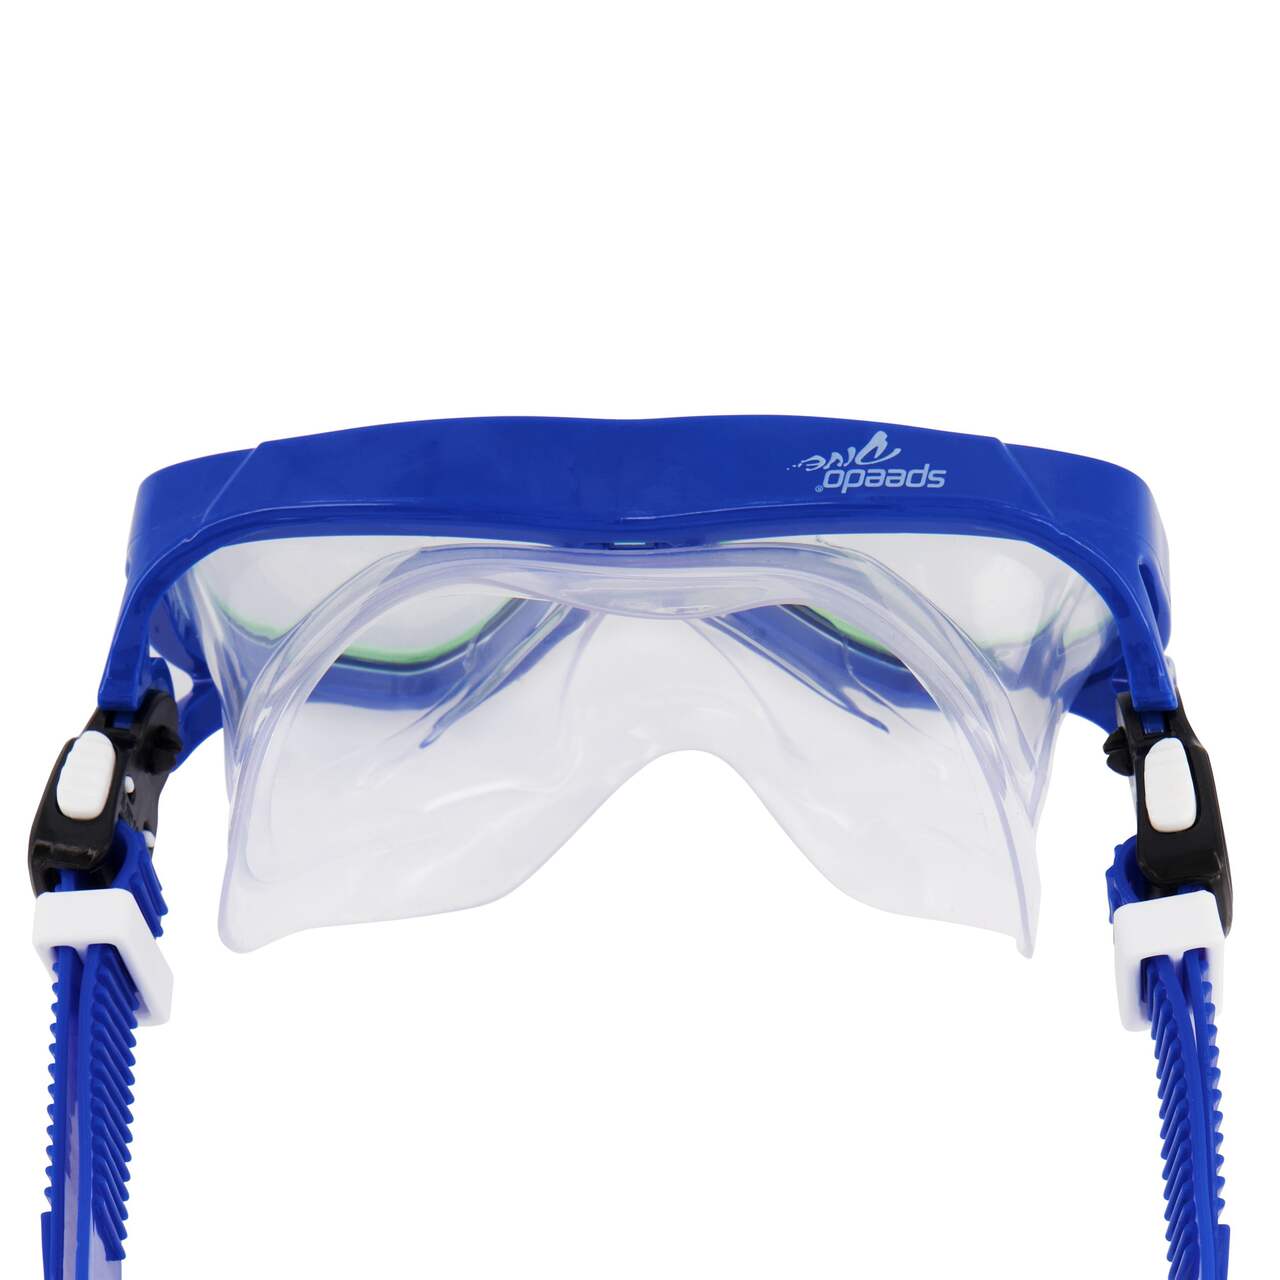 Masque de natation pour enfants Speedo Surfgazer, choix varié